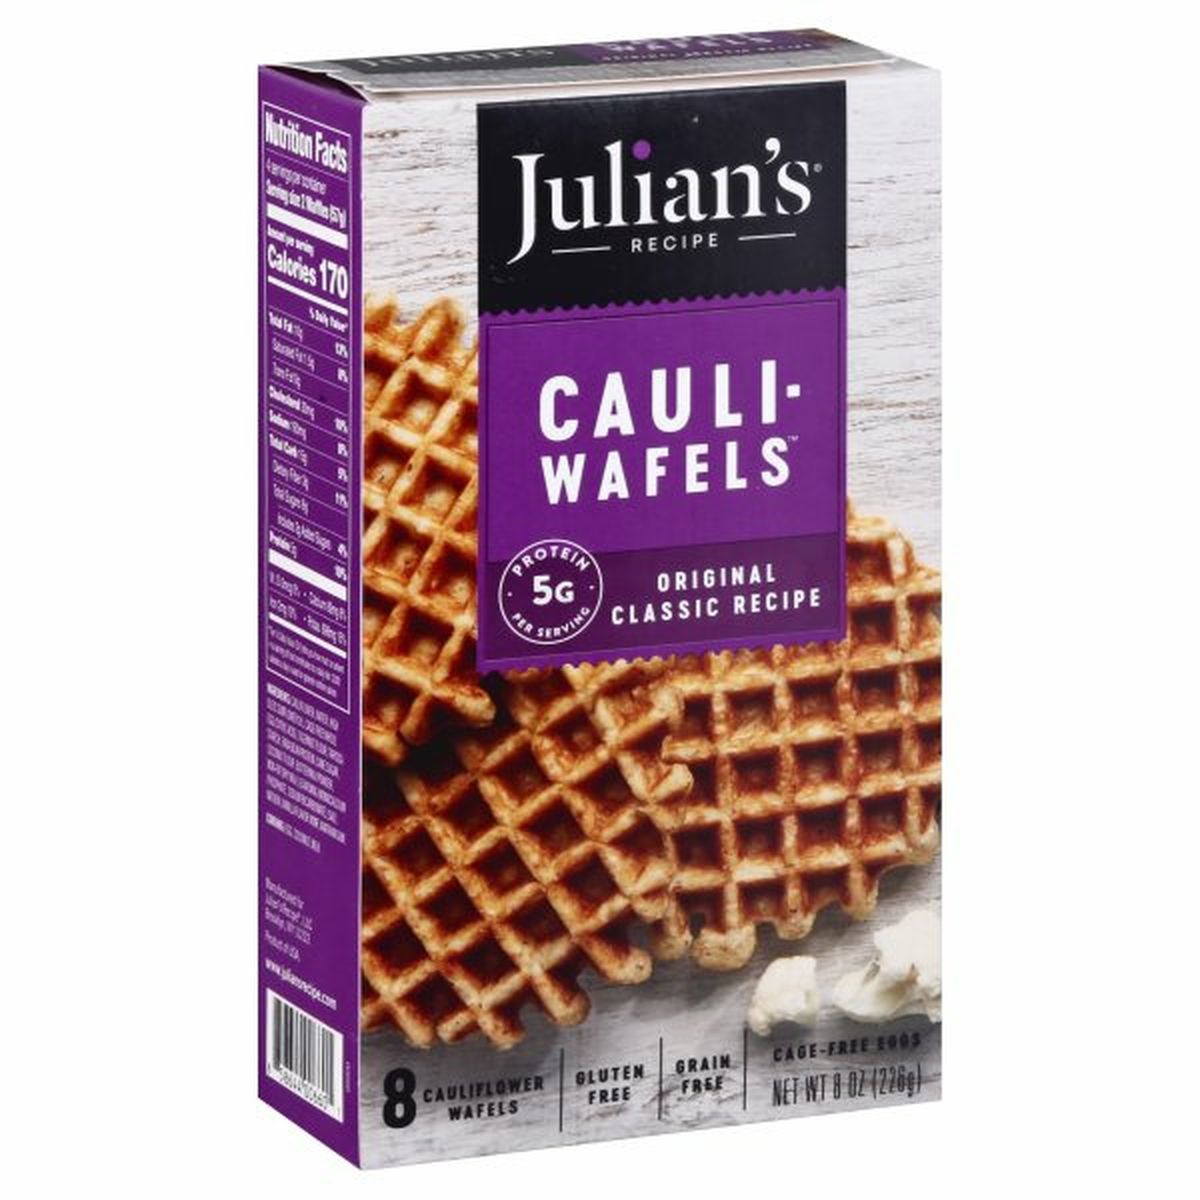 Calories in Julian's Recipe Cauli-Wafels, Original Classic Recipe